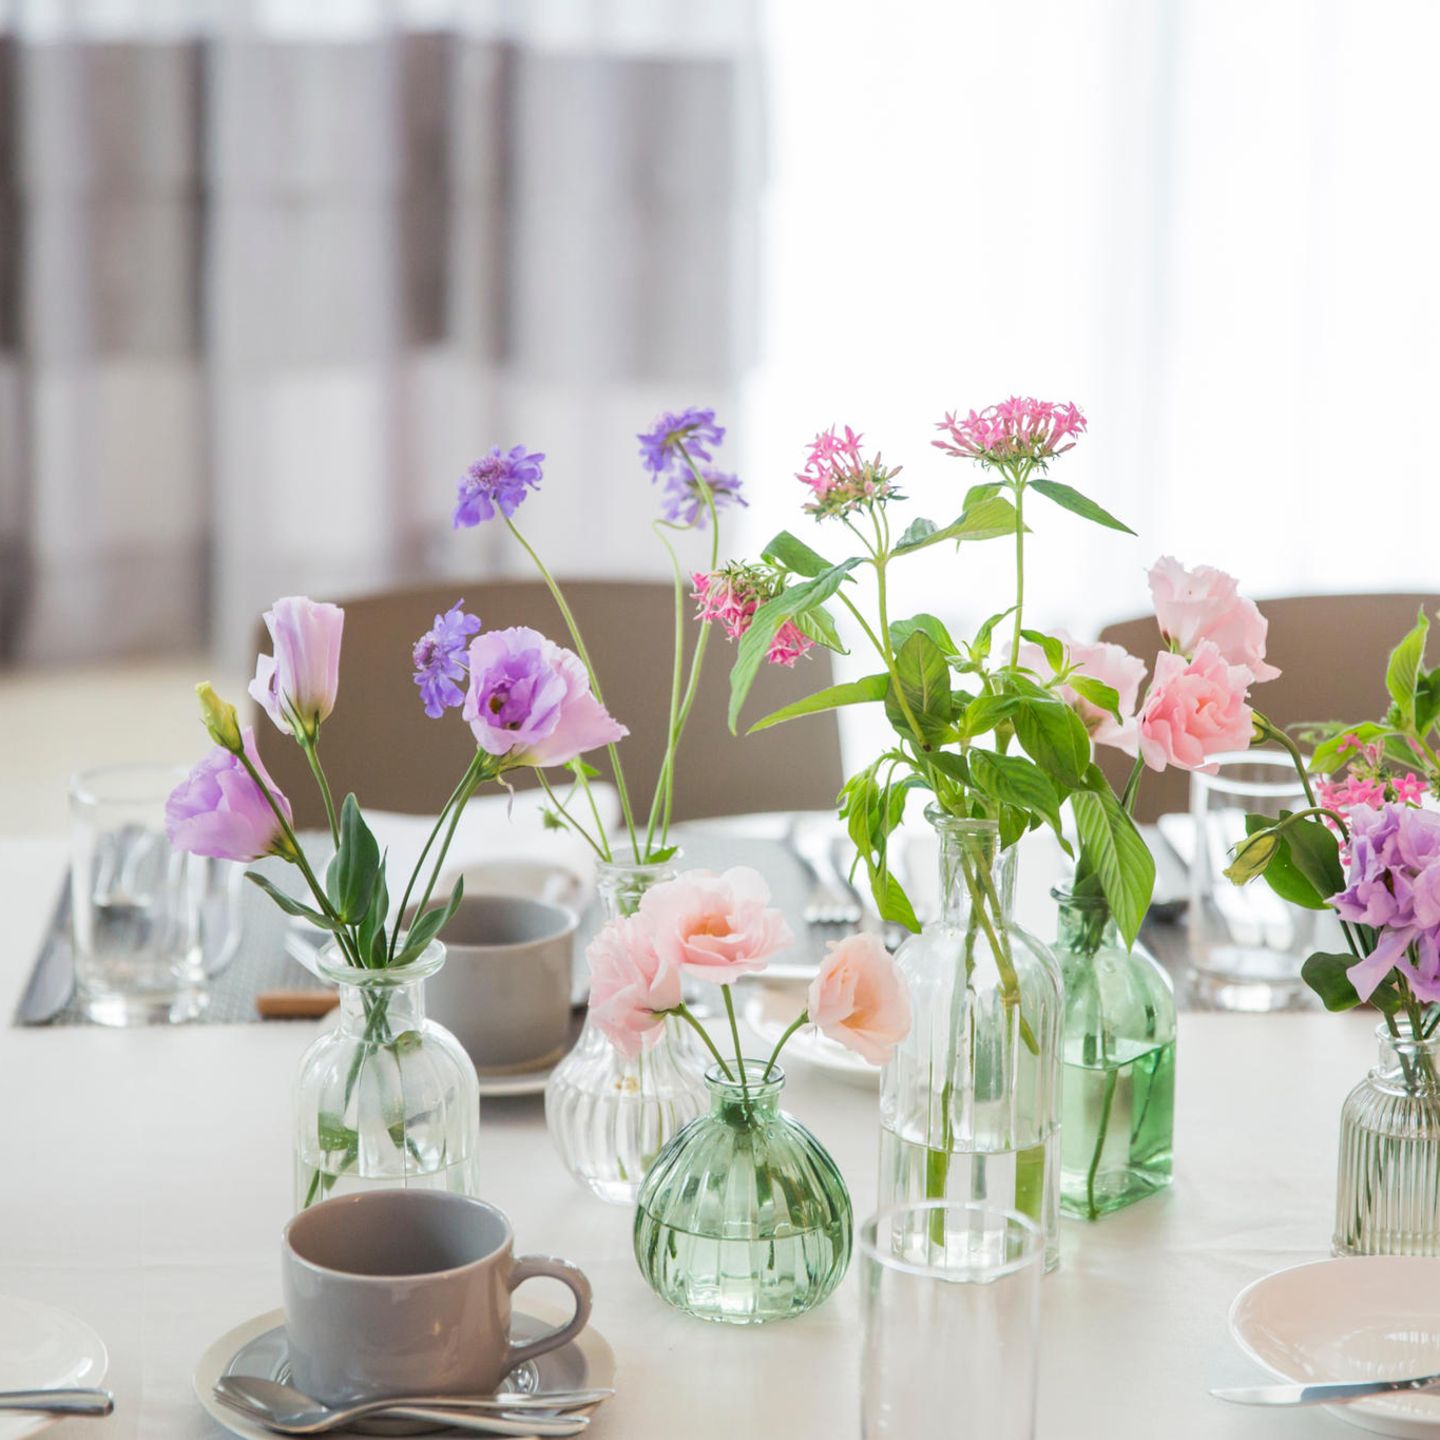 Tipps bei Kälte: Frühlingsblumen auf den Tisch